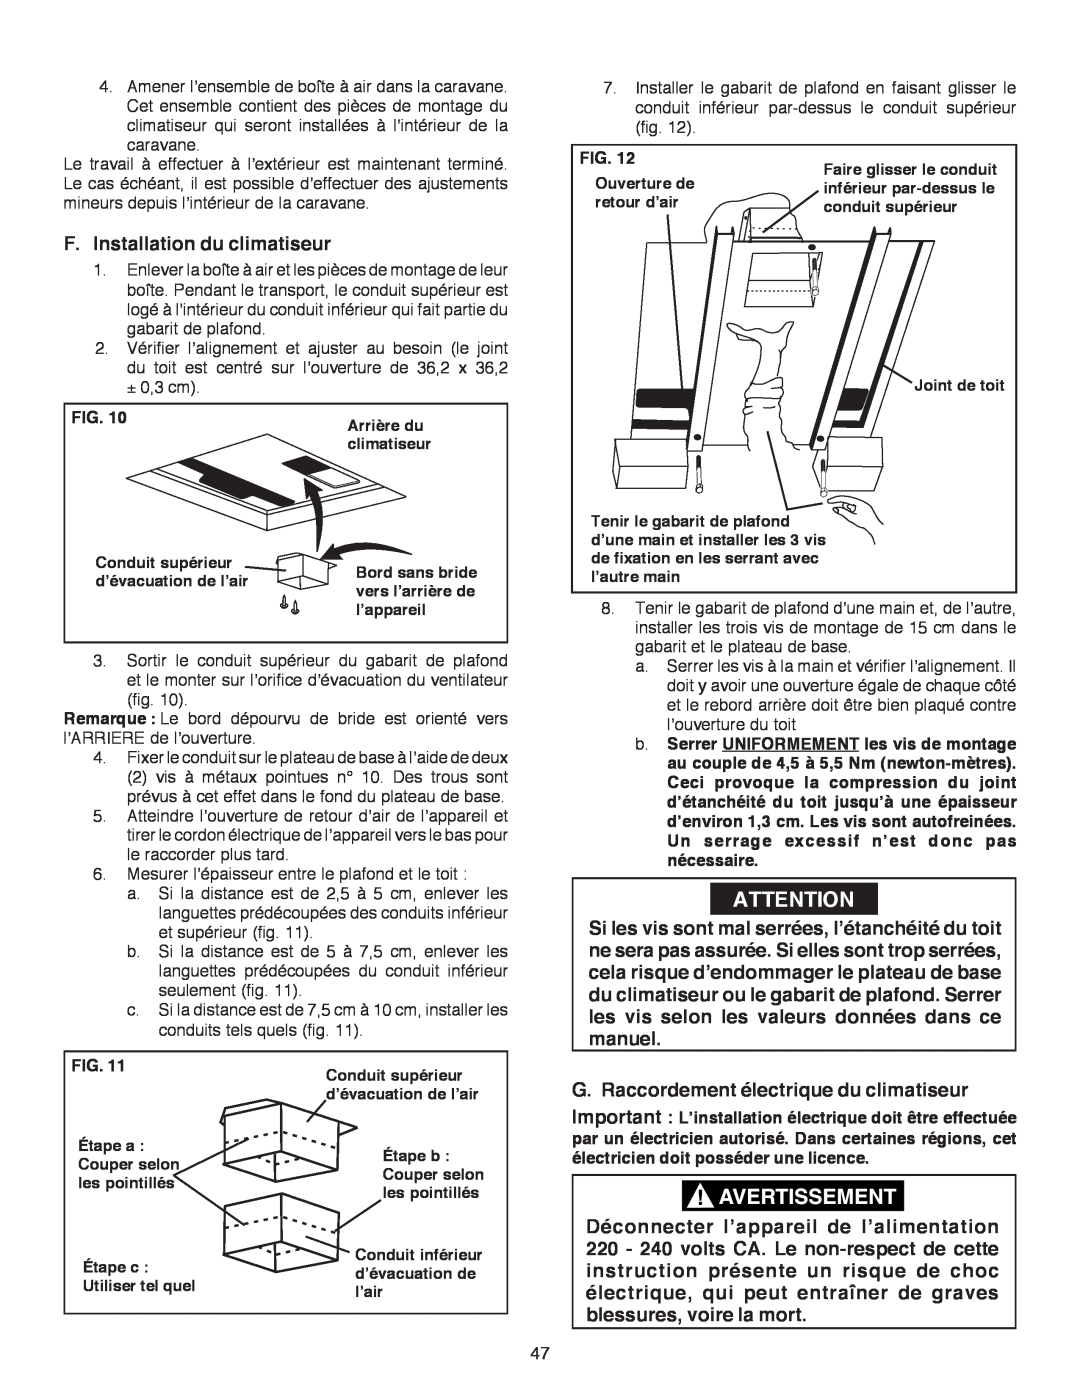 Dometic B3200 manual F.Installation du climatiseur, G. Raccordement électrique du climatiseur, Fig 